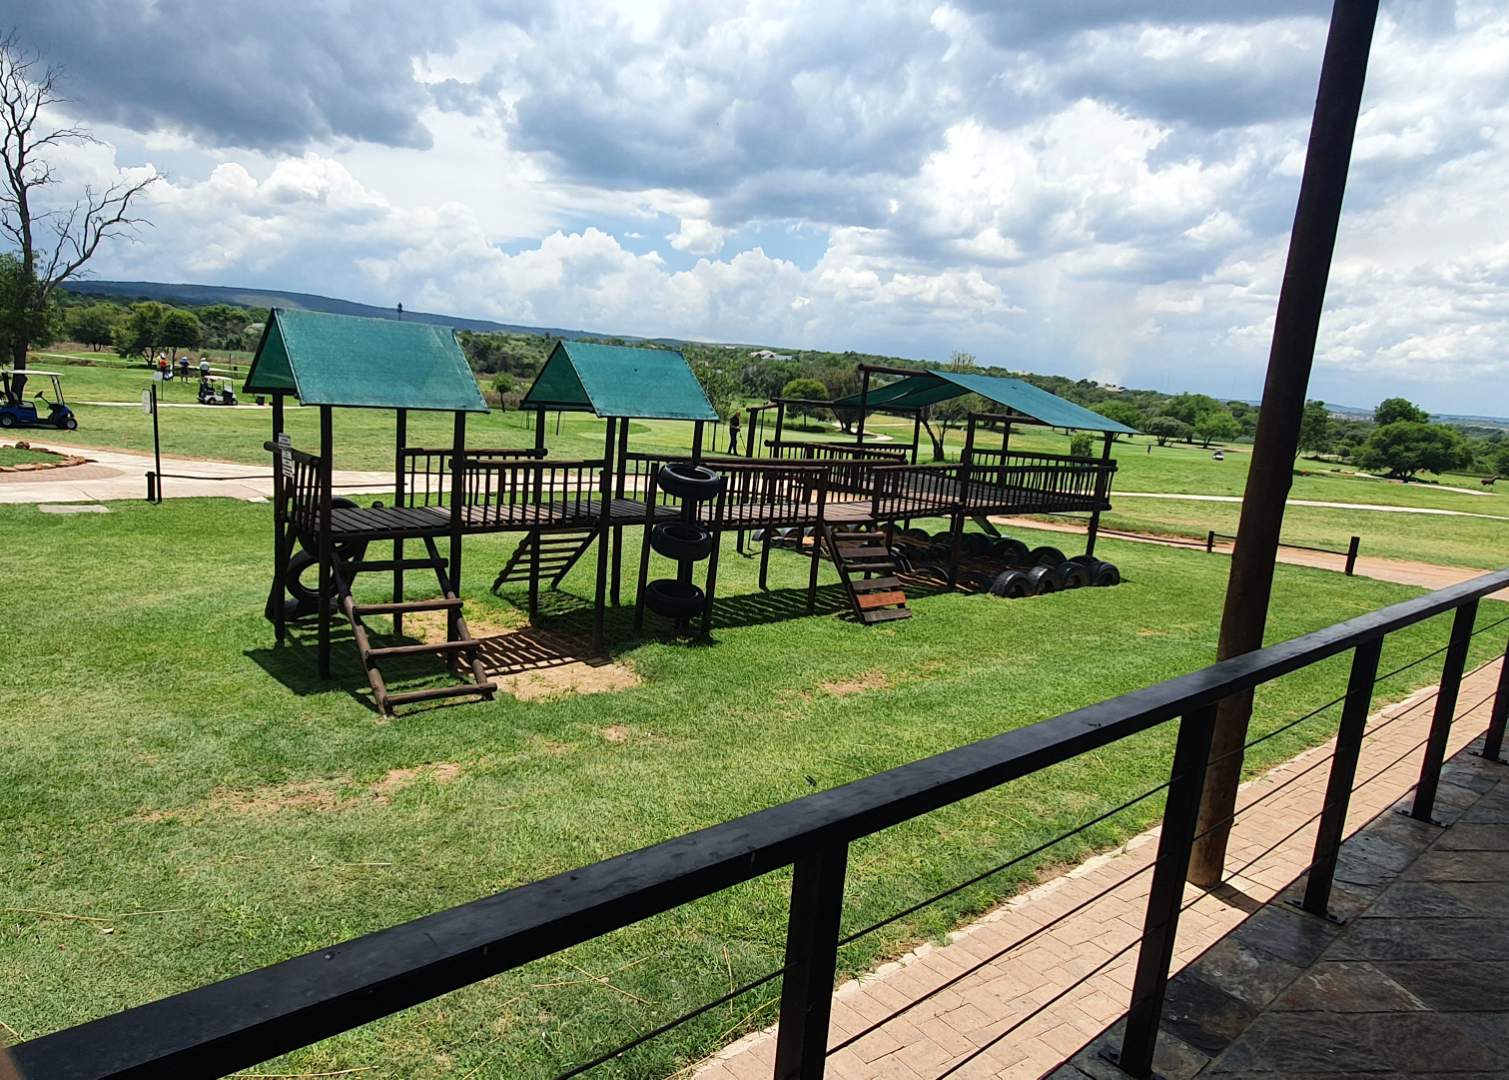 0 Bedroom Property for Sale in Koro Creek Golf Estate Limpopo